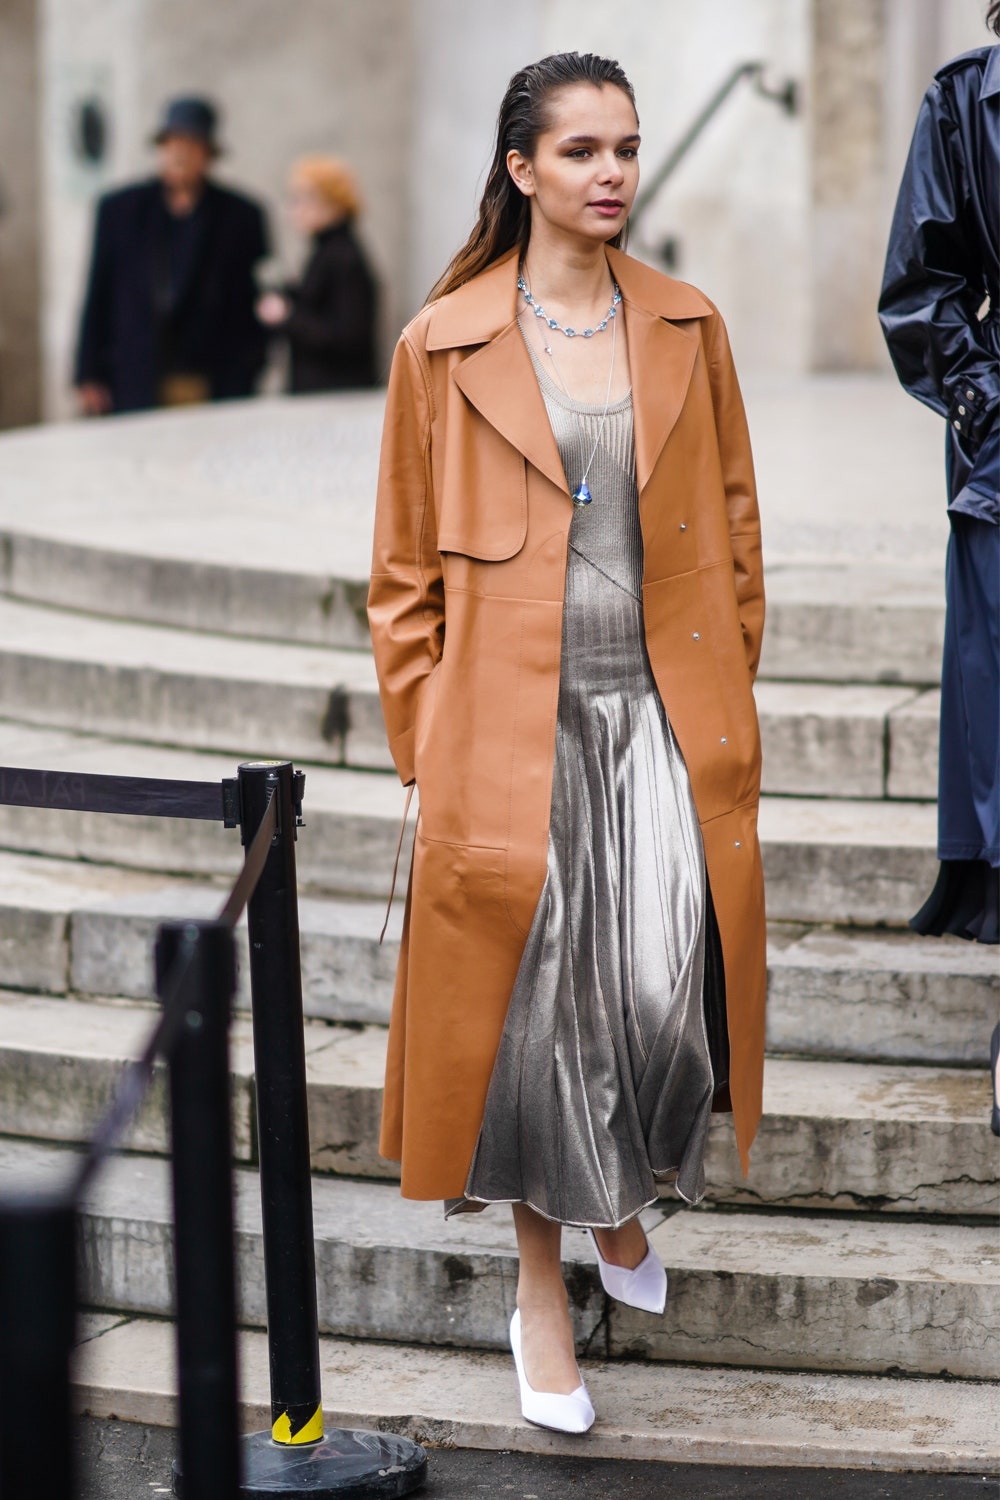 Серебряная юбка — обязательная покупка в преддверии осени